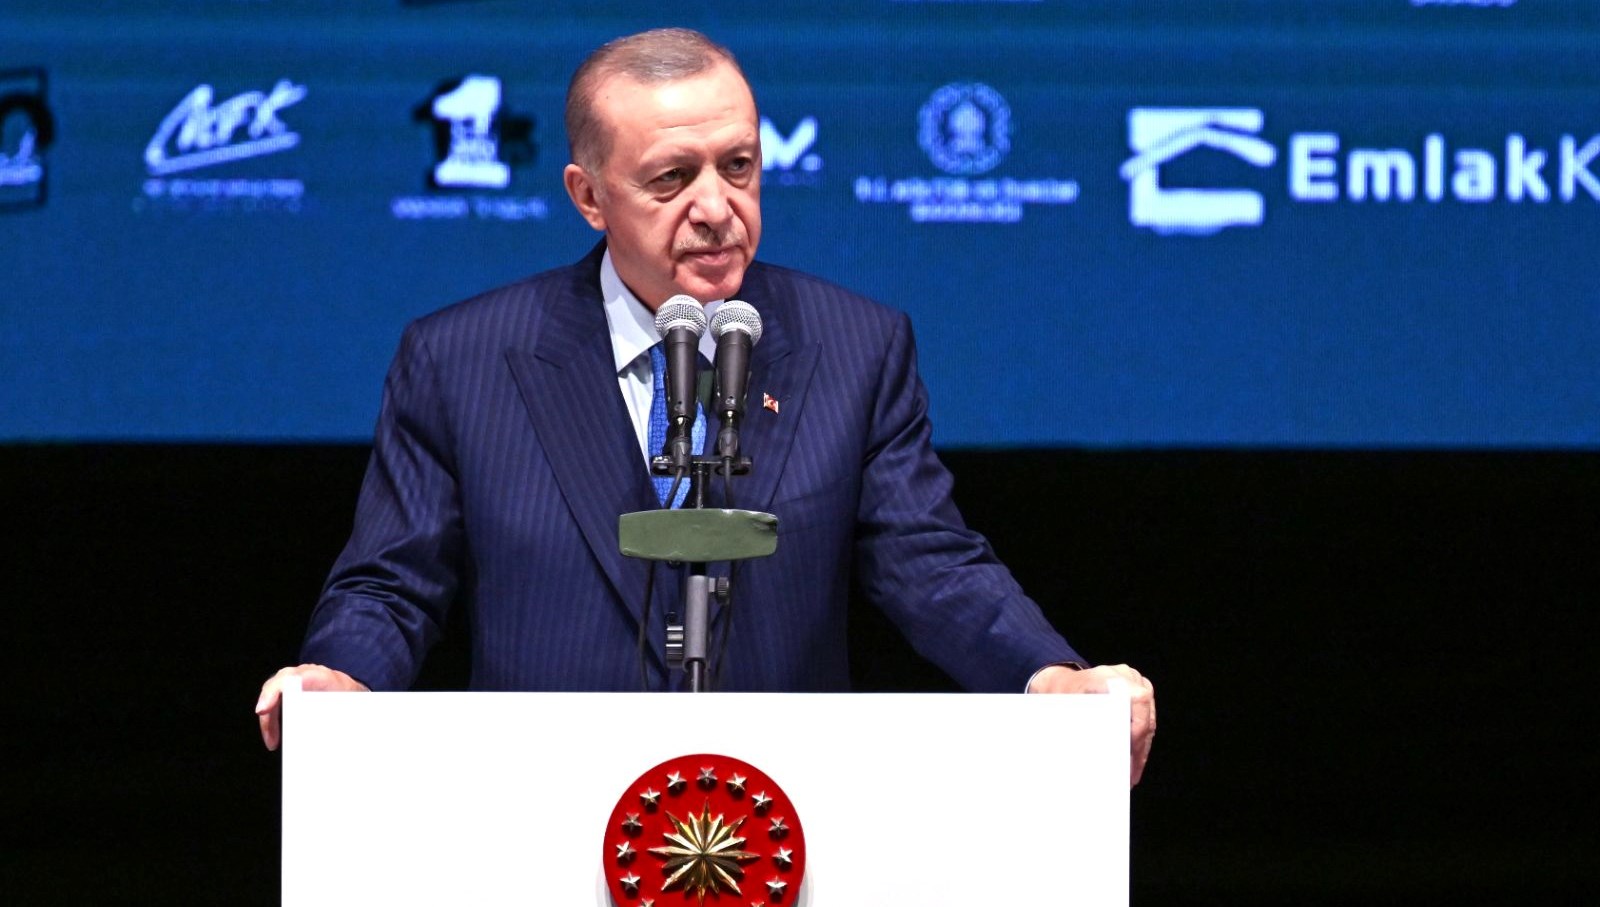 SON DAKİKA HABERİ: Cumhurbaşkanı Erdoğan’dan Kılıçdaroğlu’na “kırsal kesim” reaksiyonu